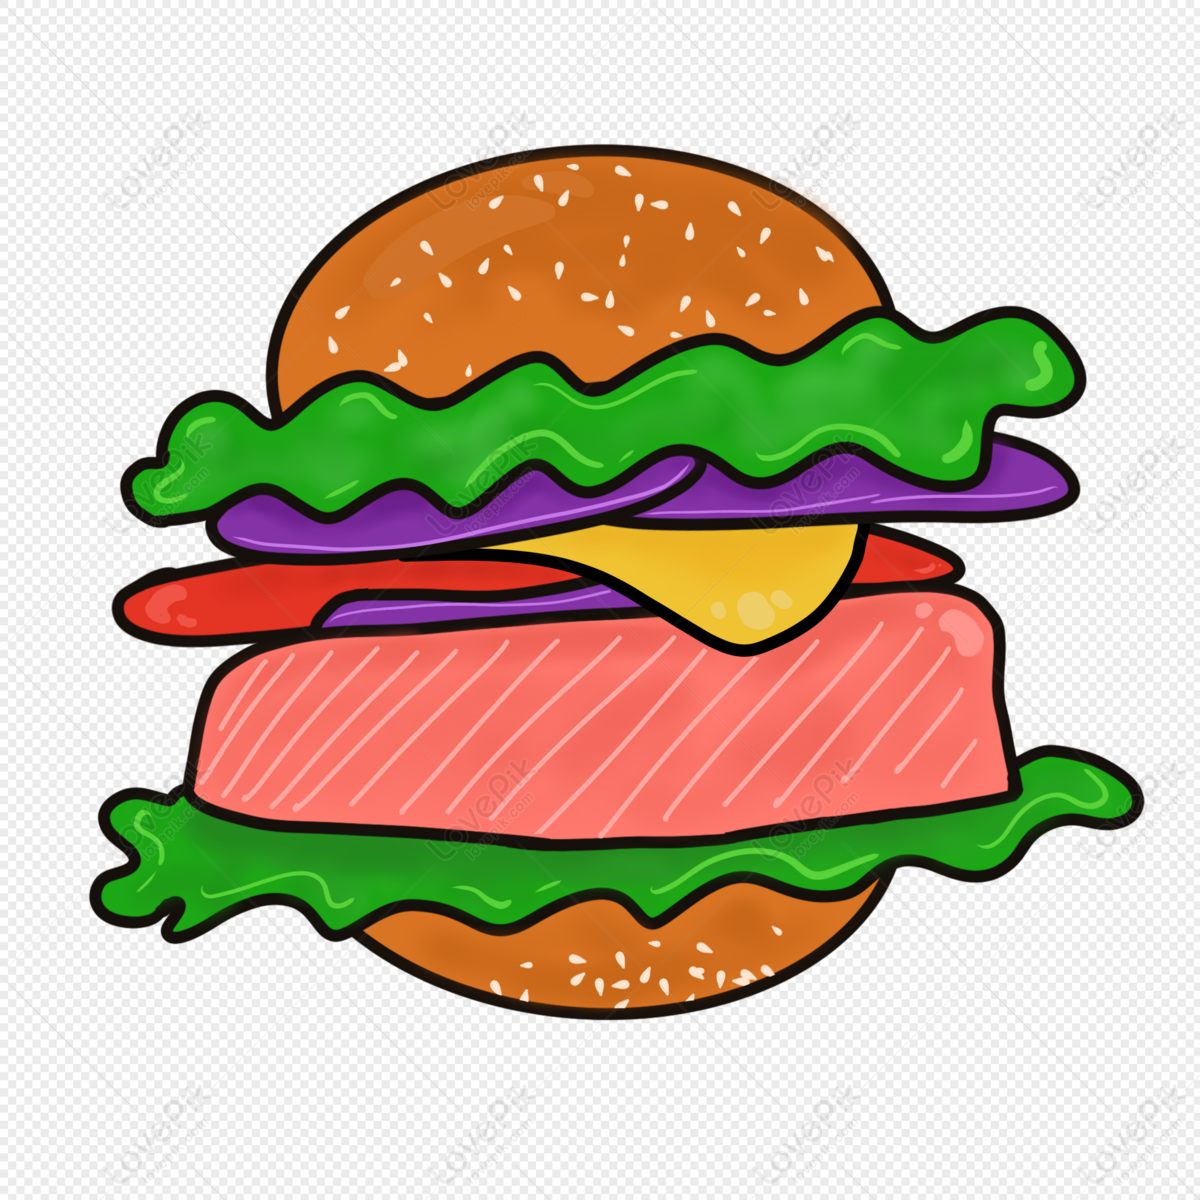 Hình ảnh Phim Hoạt Hình Thức ăn Nhanh Burger PNG Miễn Phí Tải Về - Lovepik